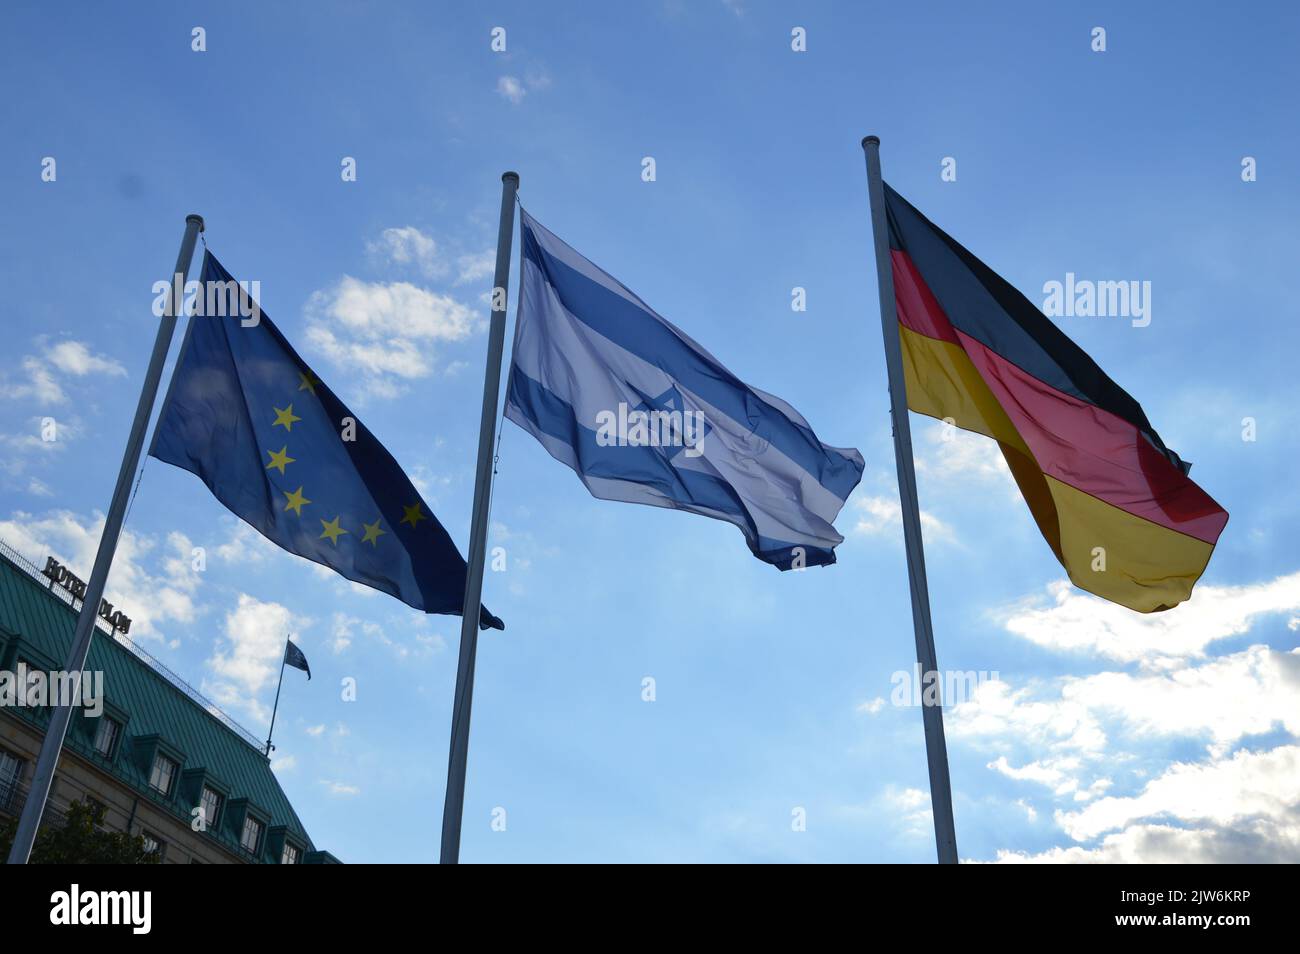 Berlin, Allemagne - 3 septembre 2022 - drapeaux israéliens volant dans le centre-ville de Berlin à cause de la visite officielle du président d'Israël Isaac Herzog en Allemagne. (Photo de Markku Rainer Peltonen) Banque D'Images